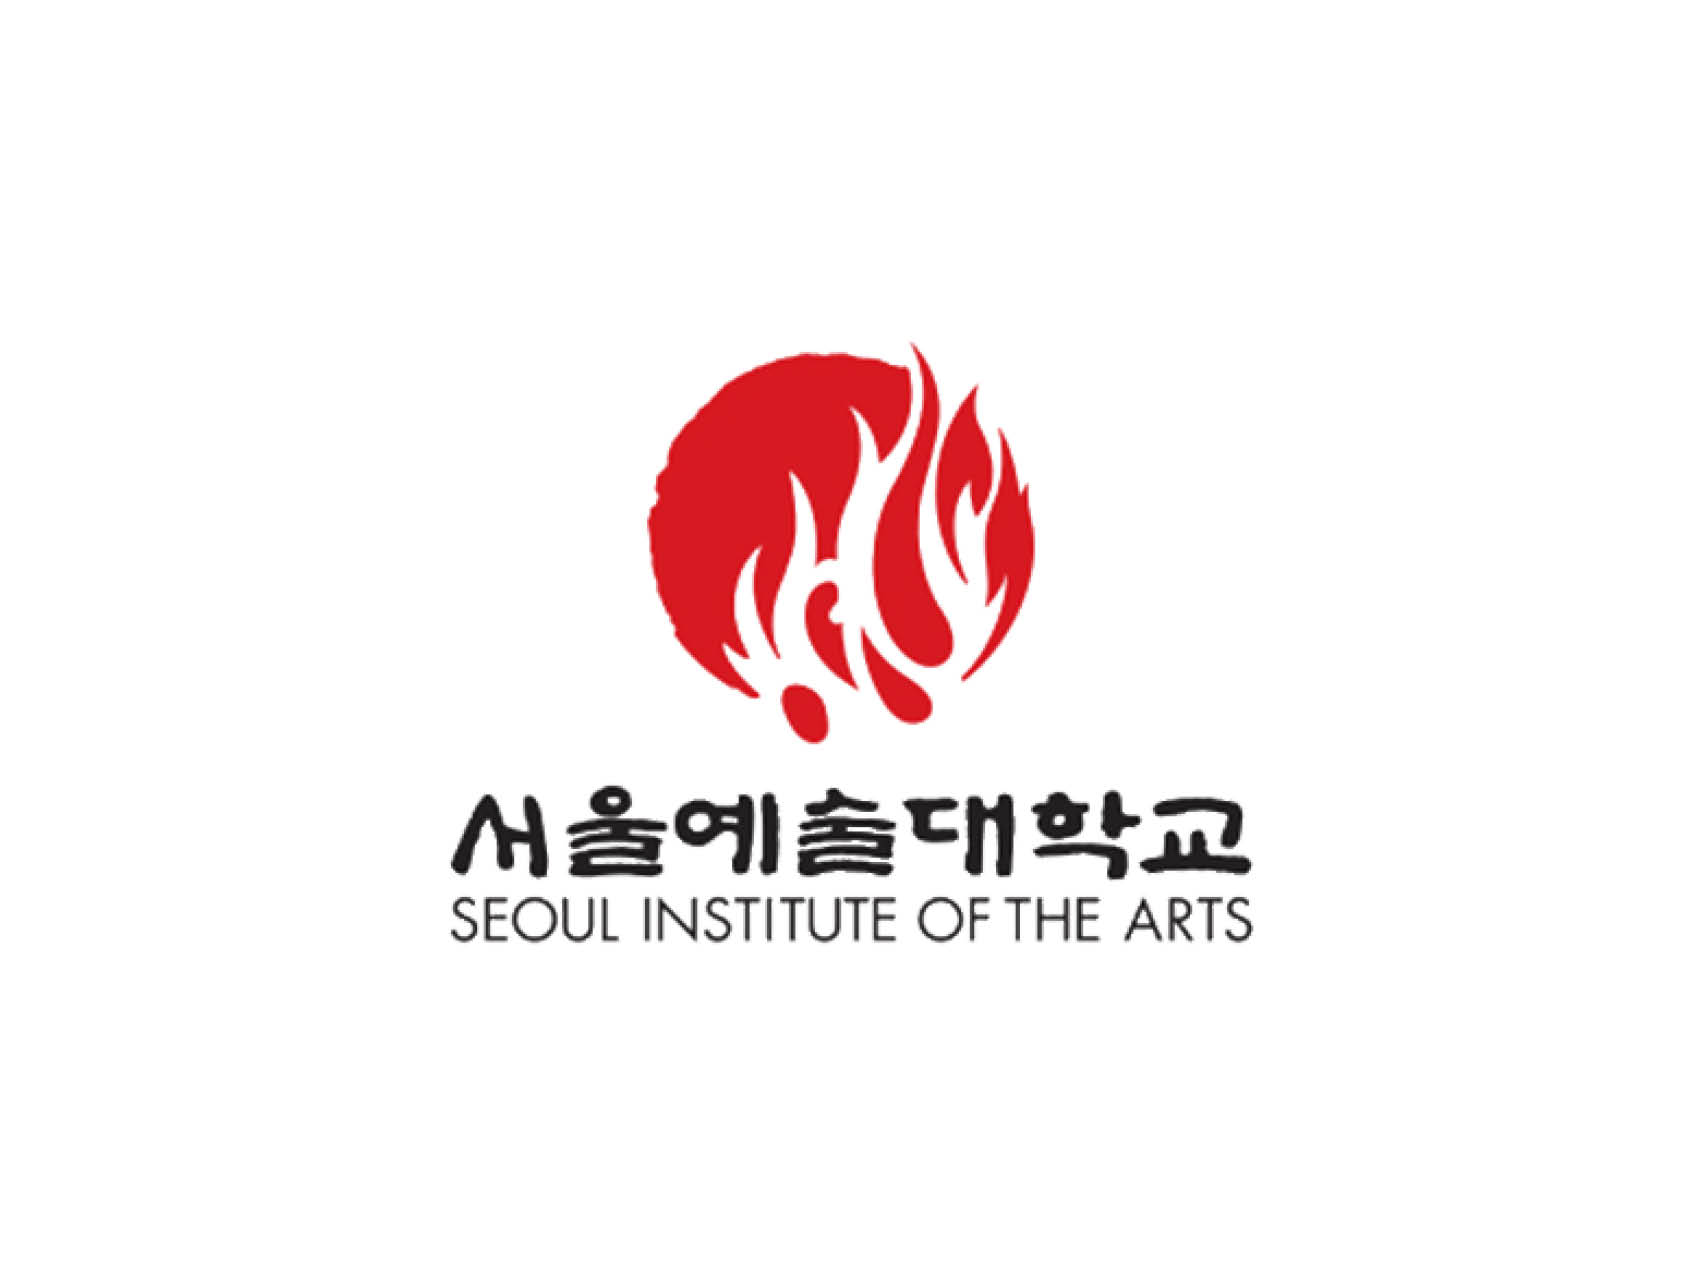 seoul institute of the arts